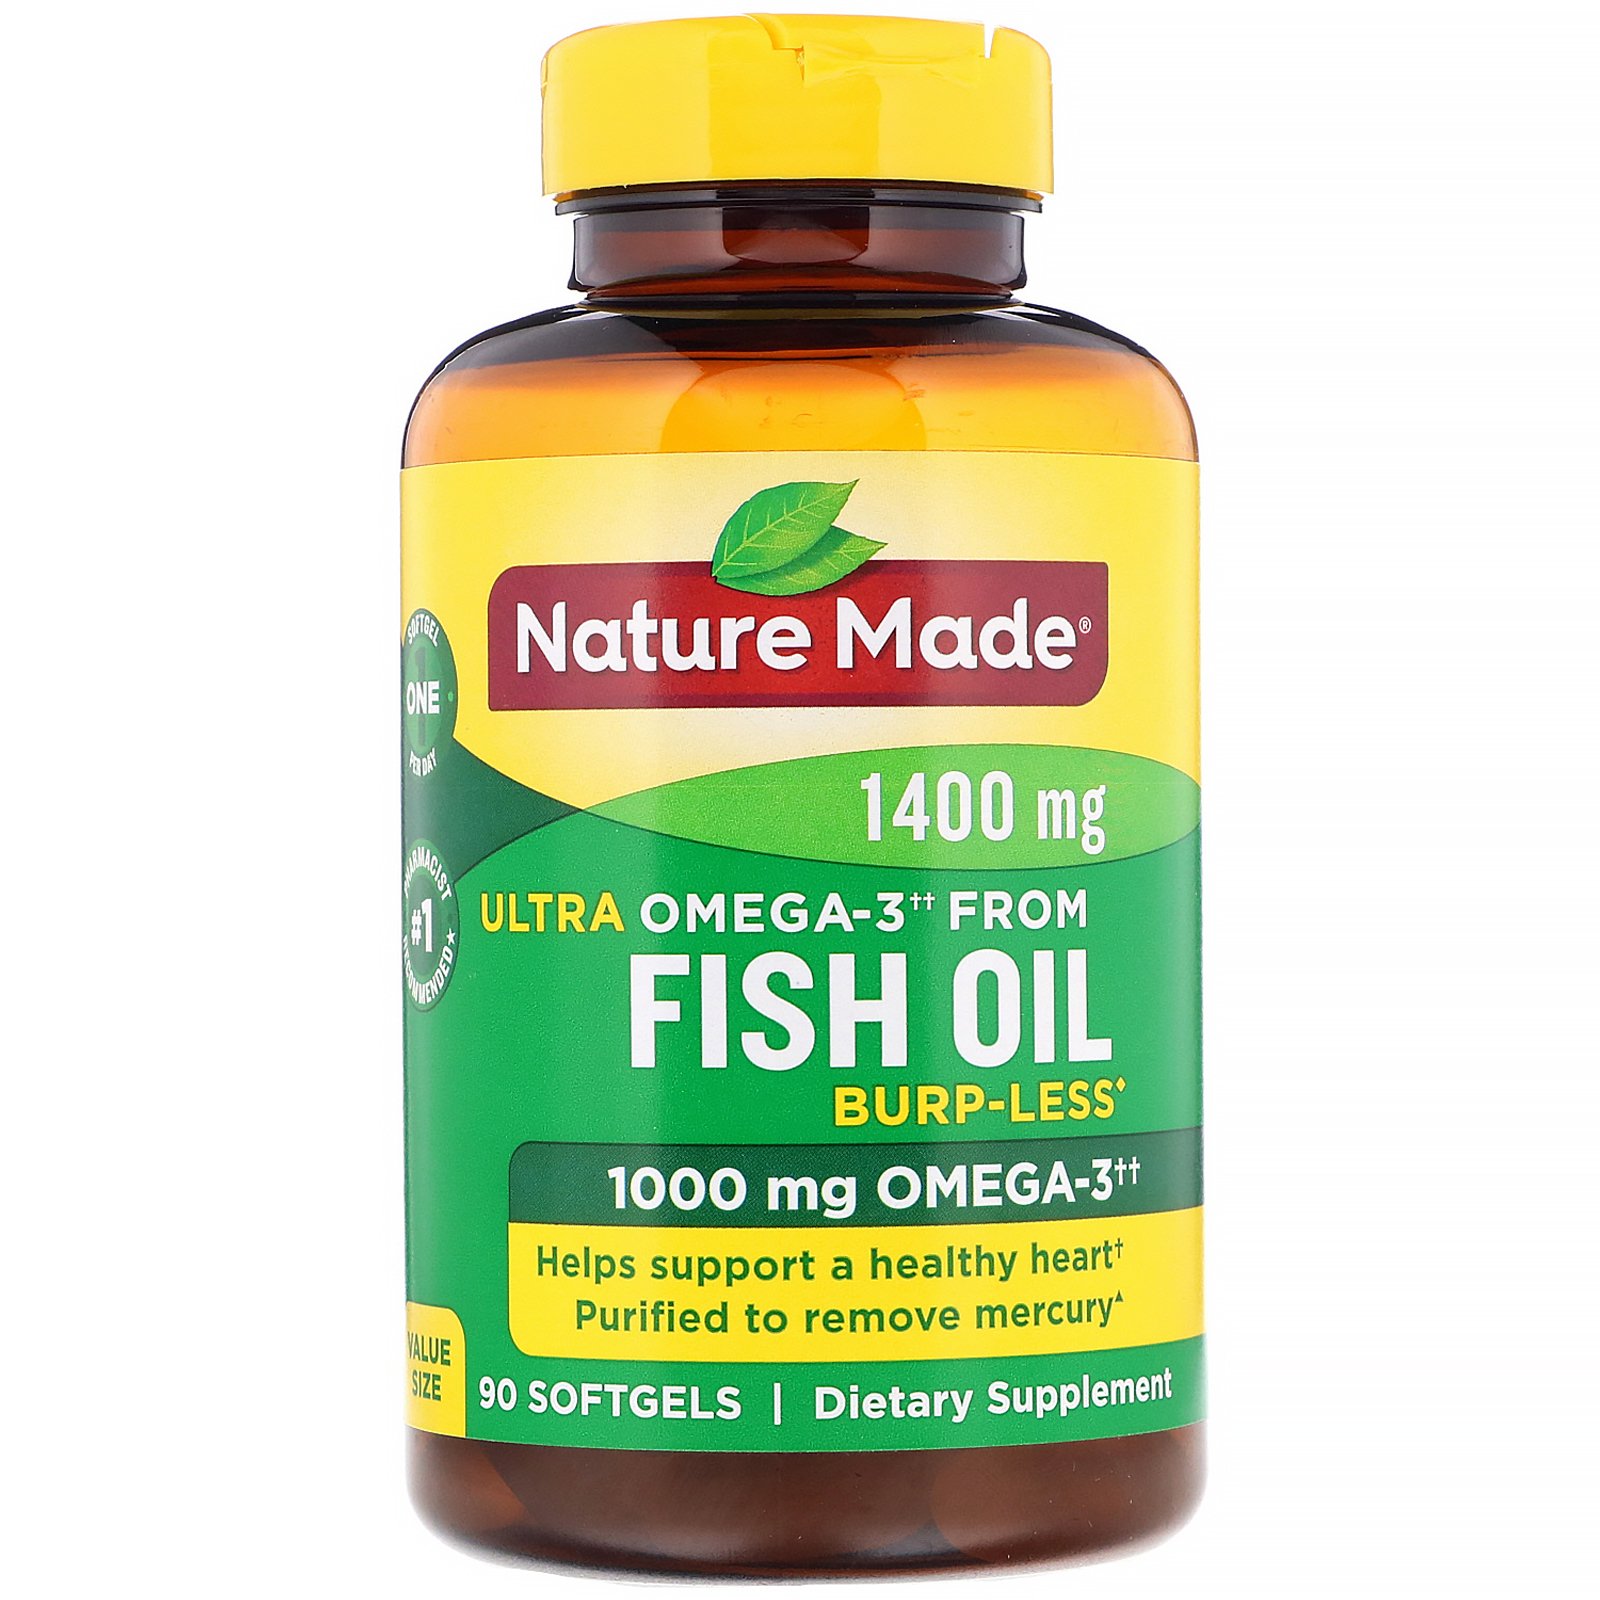 malm Blåt mærke investering Nature Made, Fish Oil, Ultra Omega-3, Burp-Less, 1,400 mg, 90 Softgels